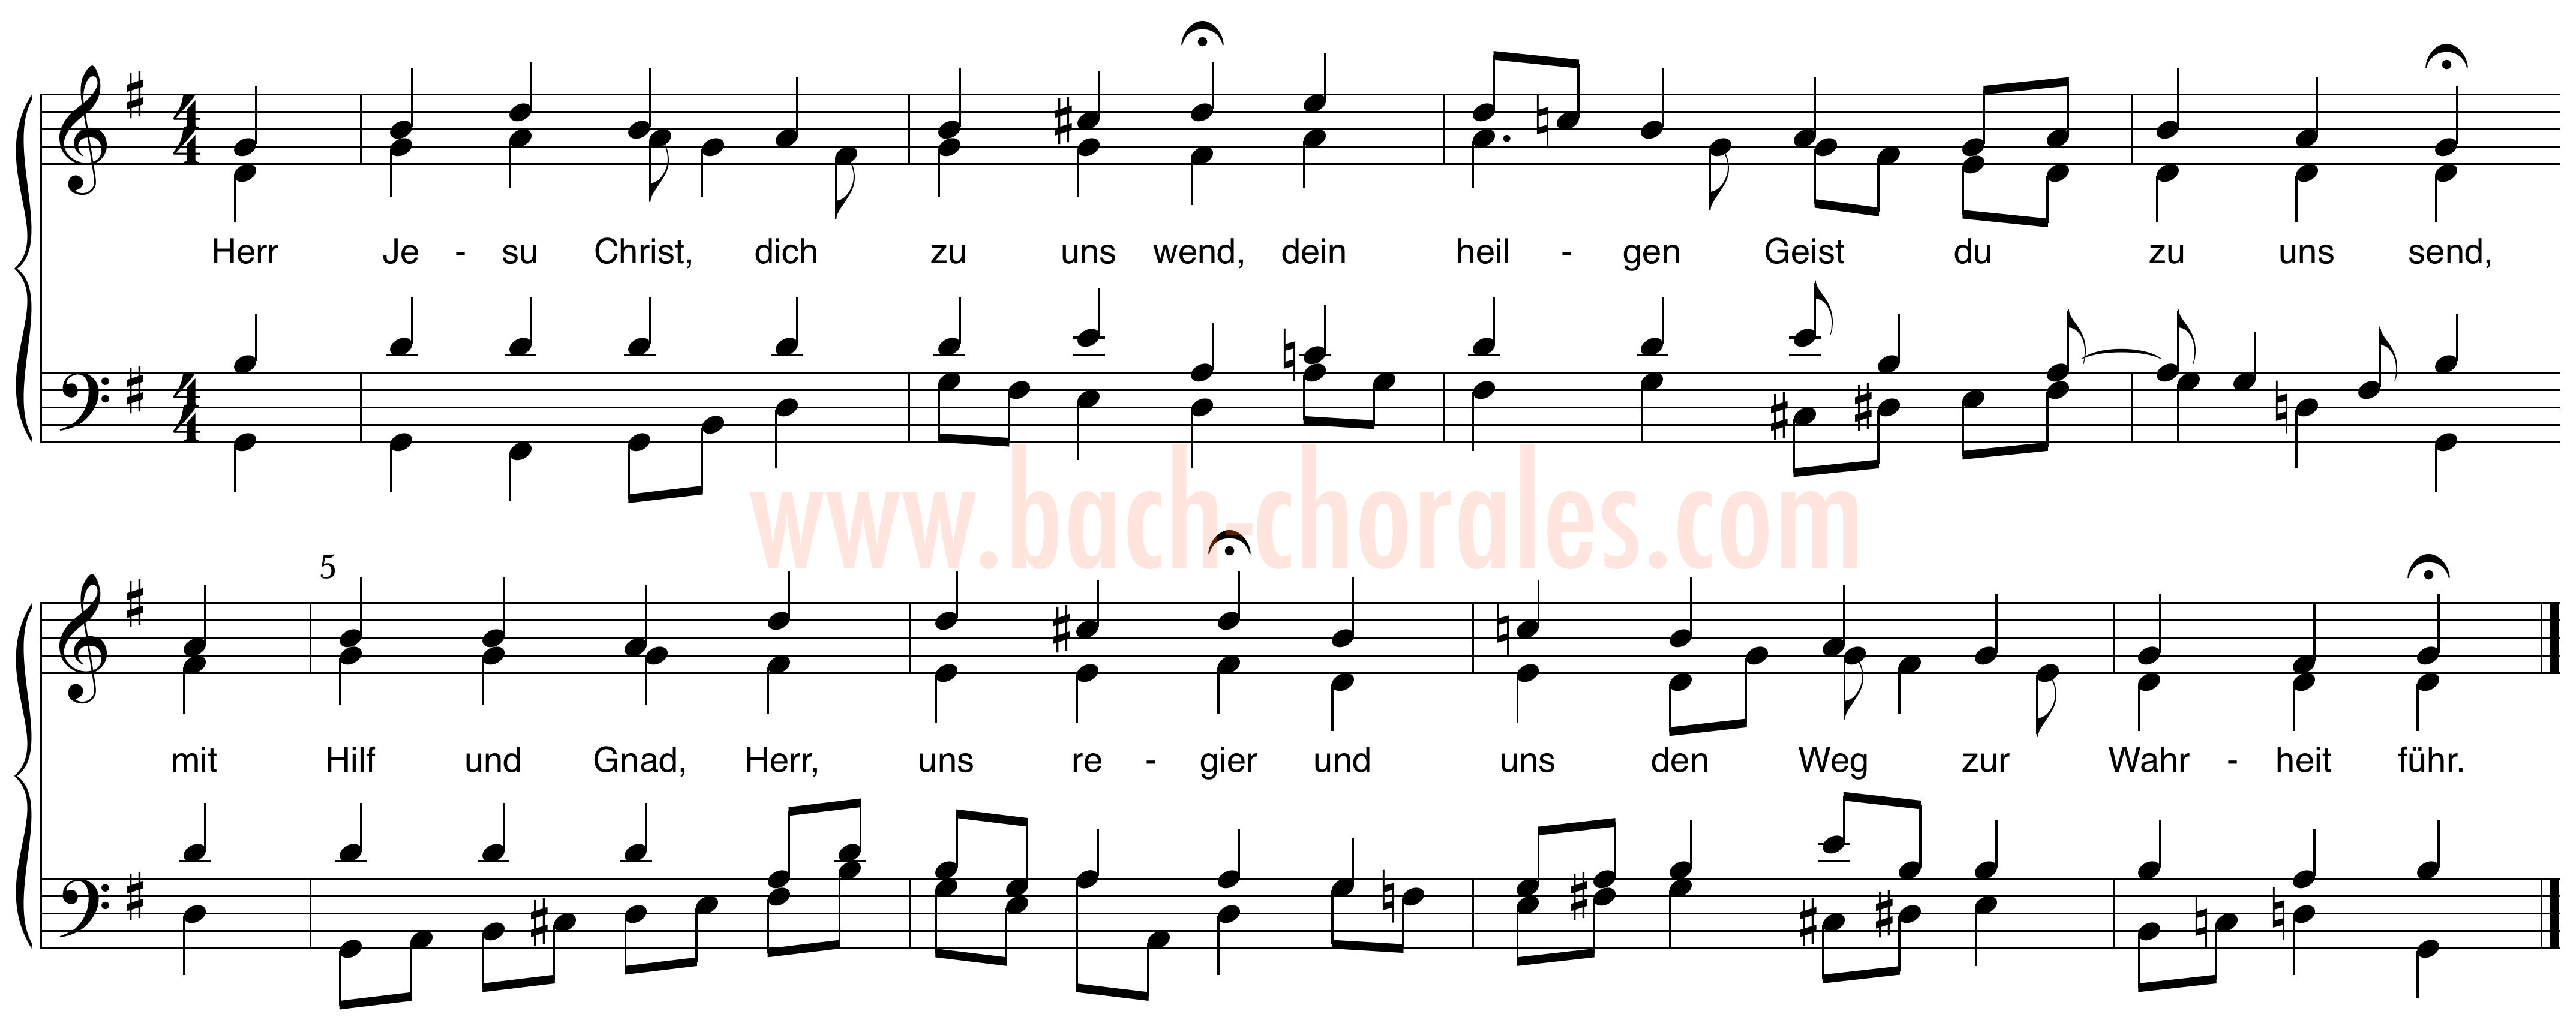 notenbeeld BWV 332 op https://www.bach-chorales.com/